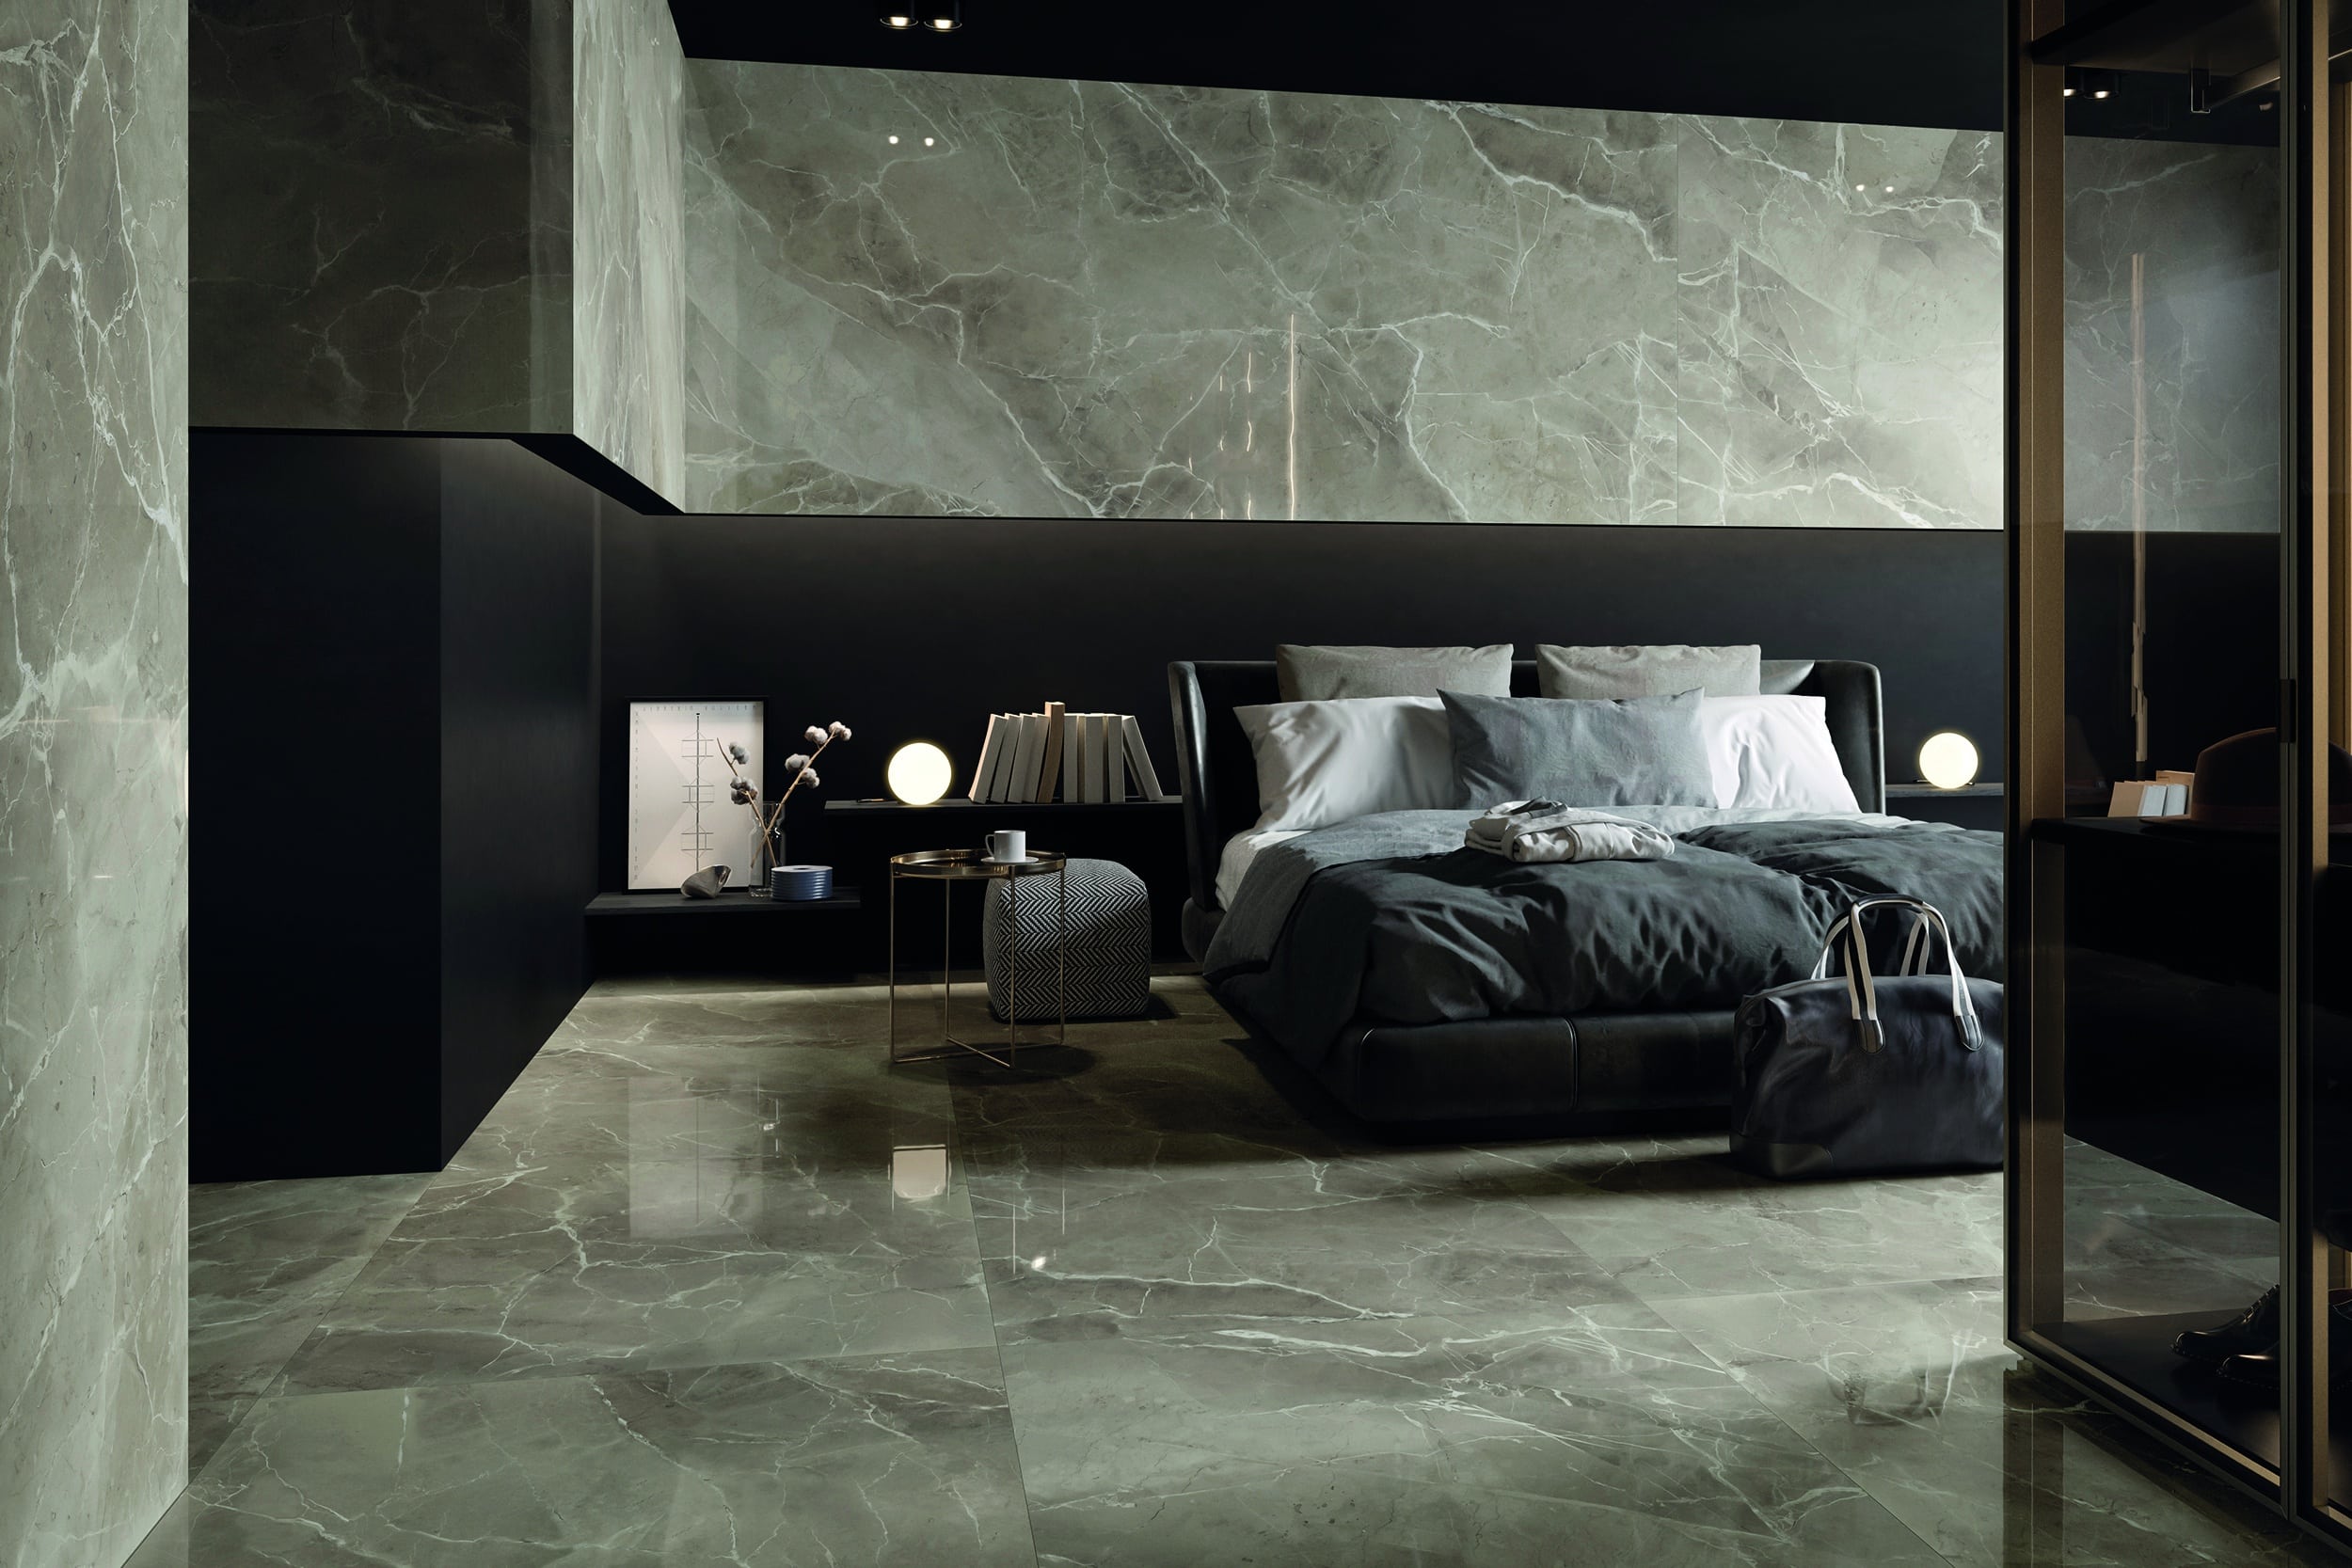 Fliesendorf zeigt die Fliesen auf Boden und Wand, welche einen grauen Marmorlook haben, eines Schlafzimmer mit großem Polsterbett, Nachttisch.